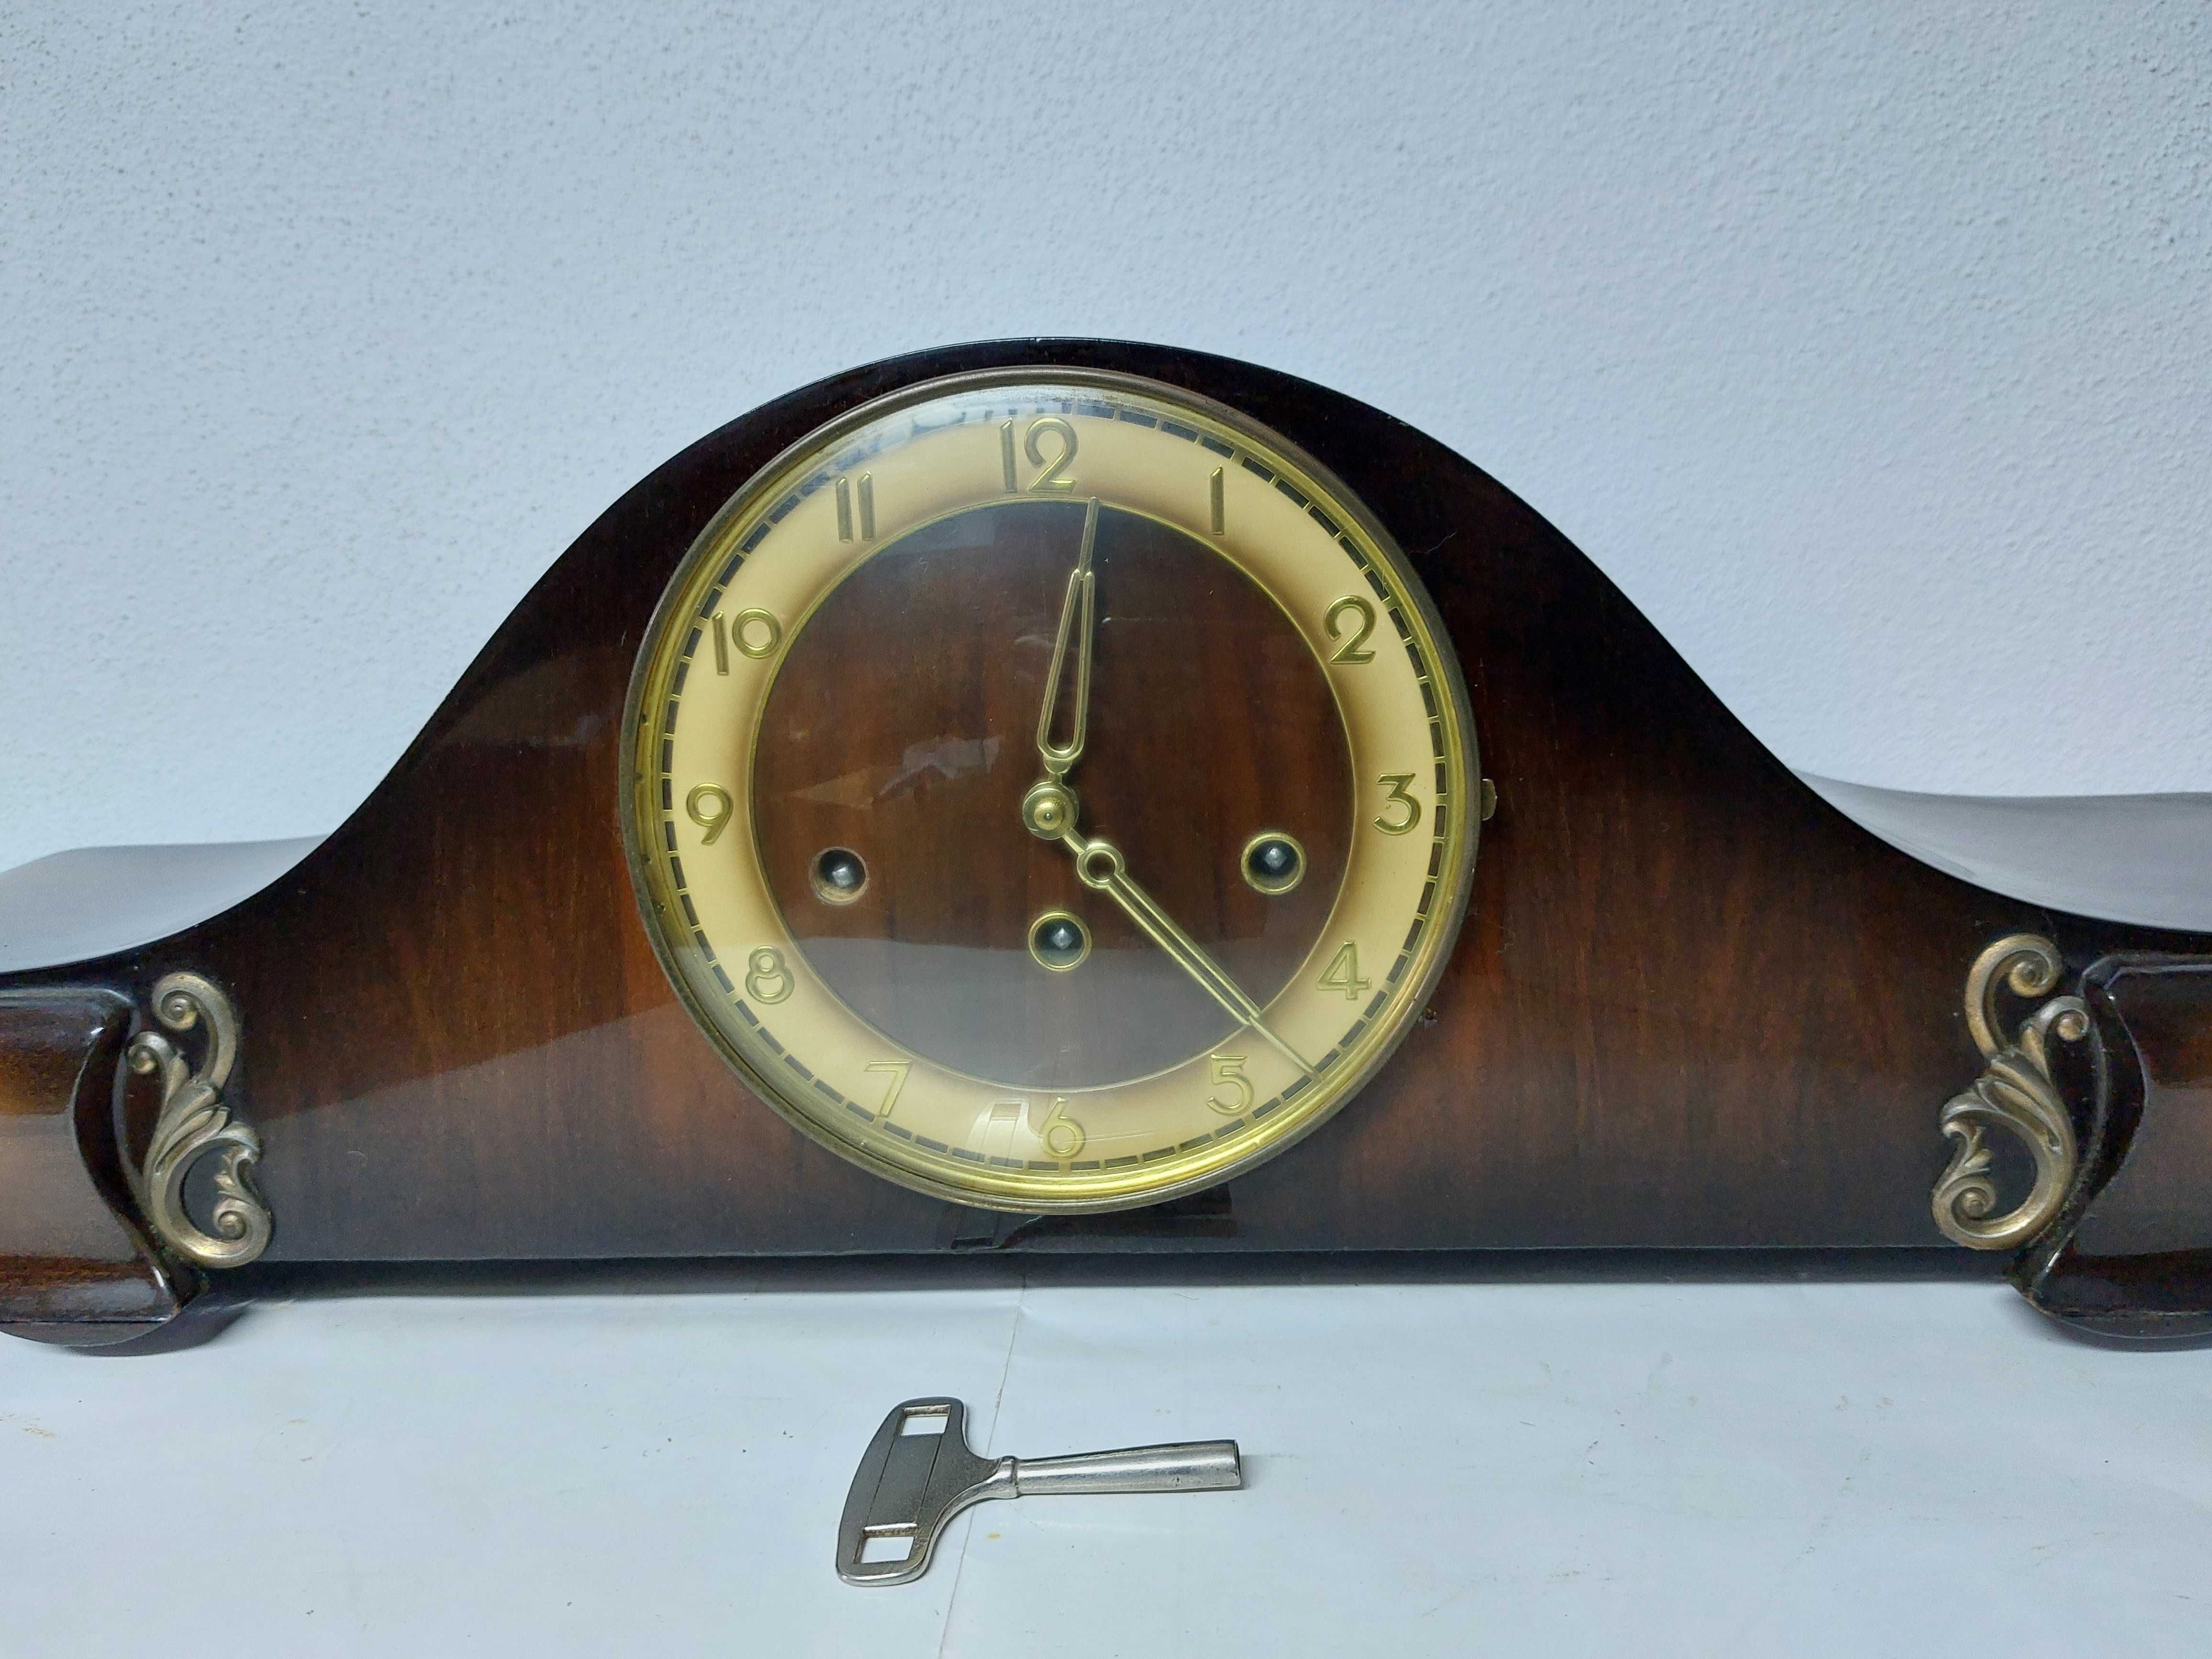 Relógio de mesa antigo, a funcionar